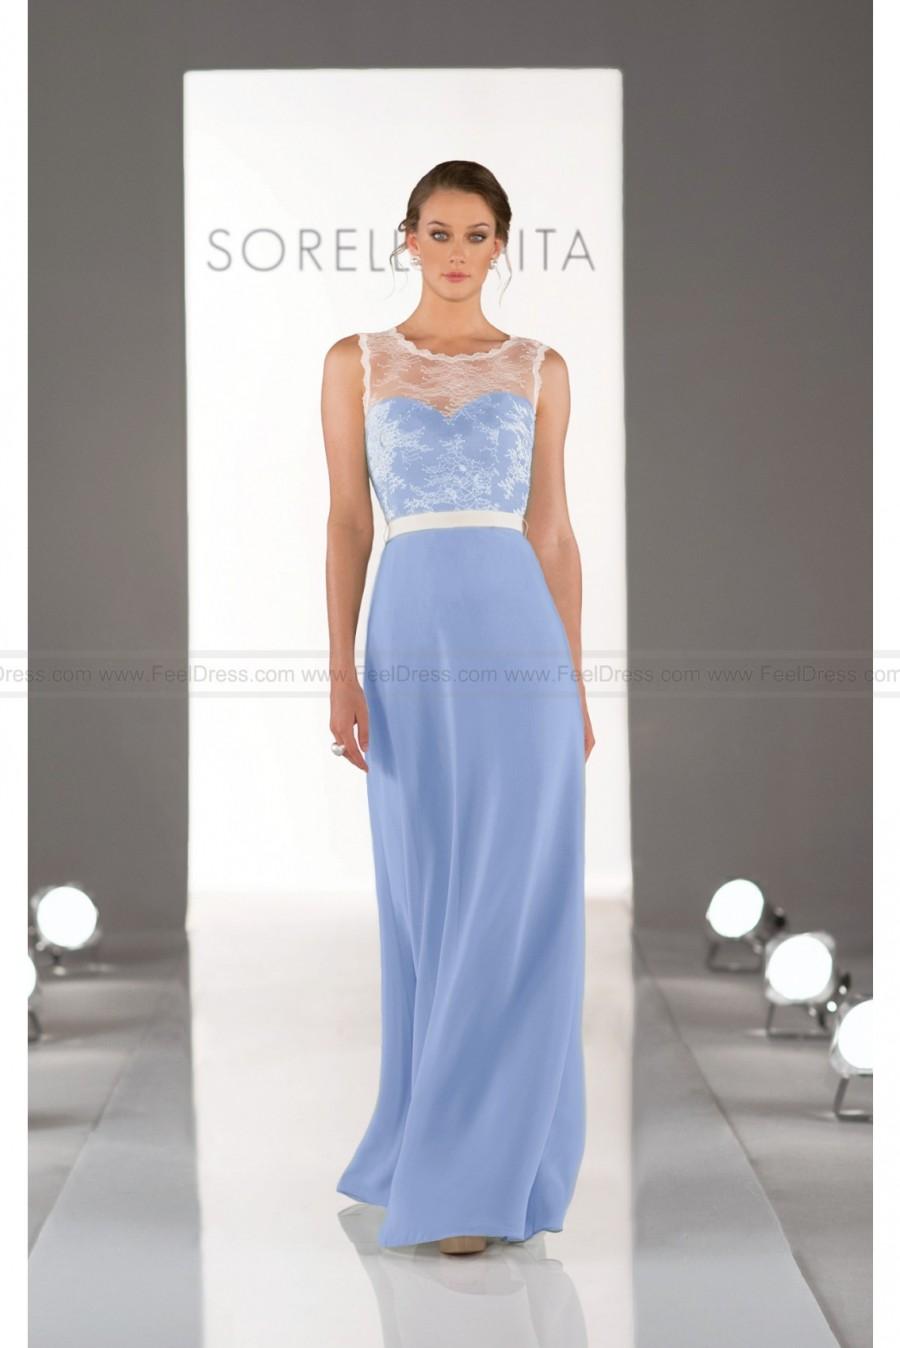 زفاف - Sorella Vita Blue Bridesmaid Dress Style 8311